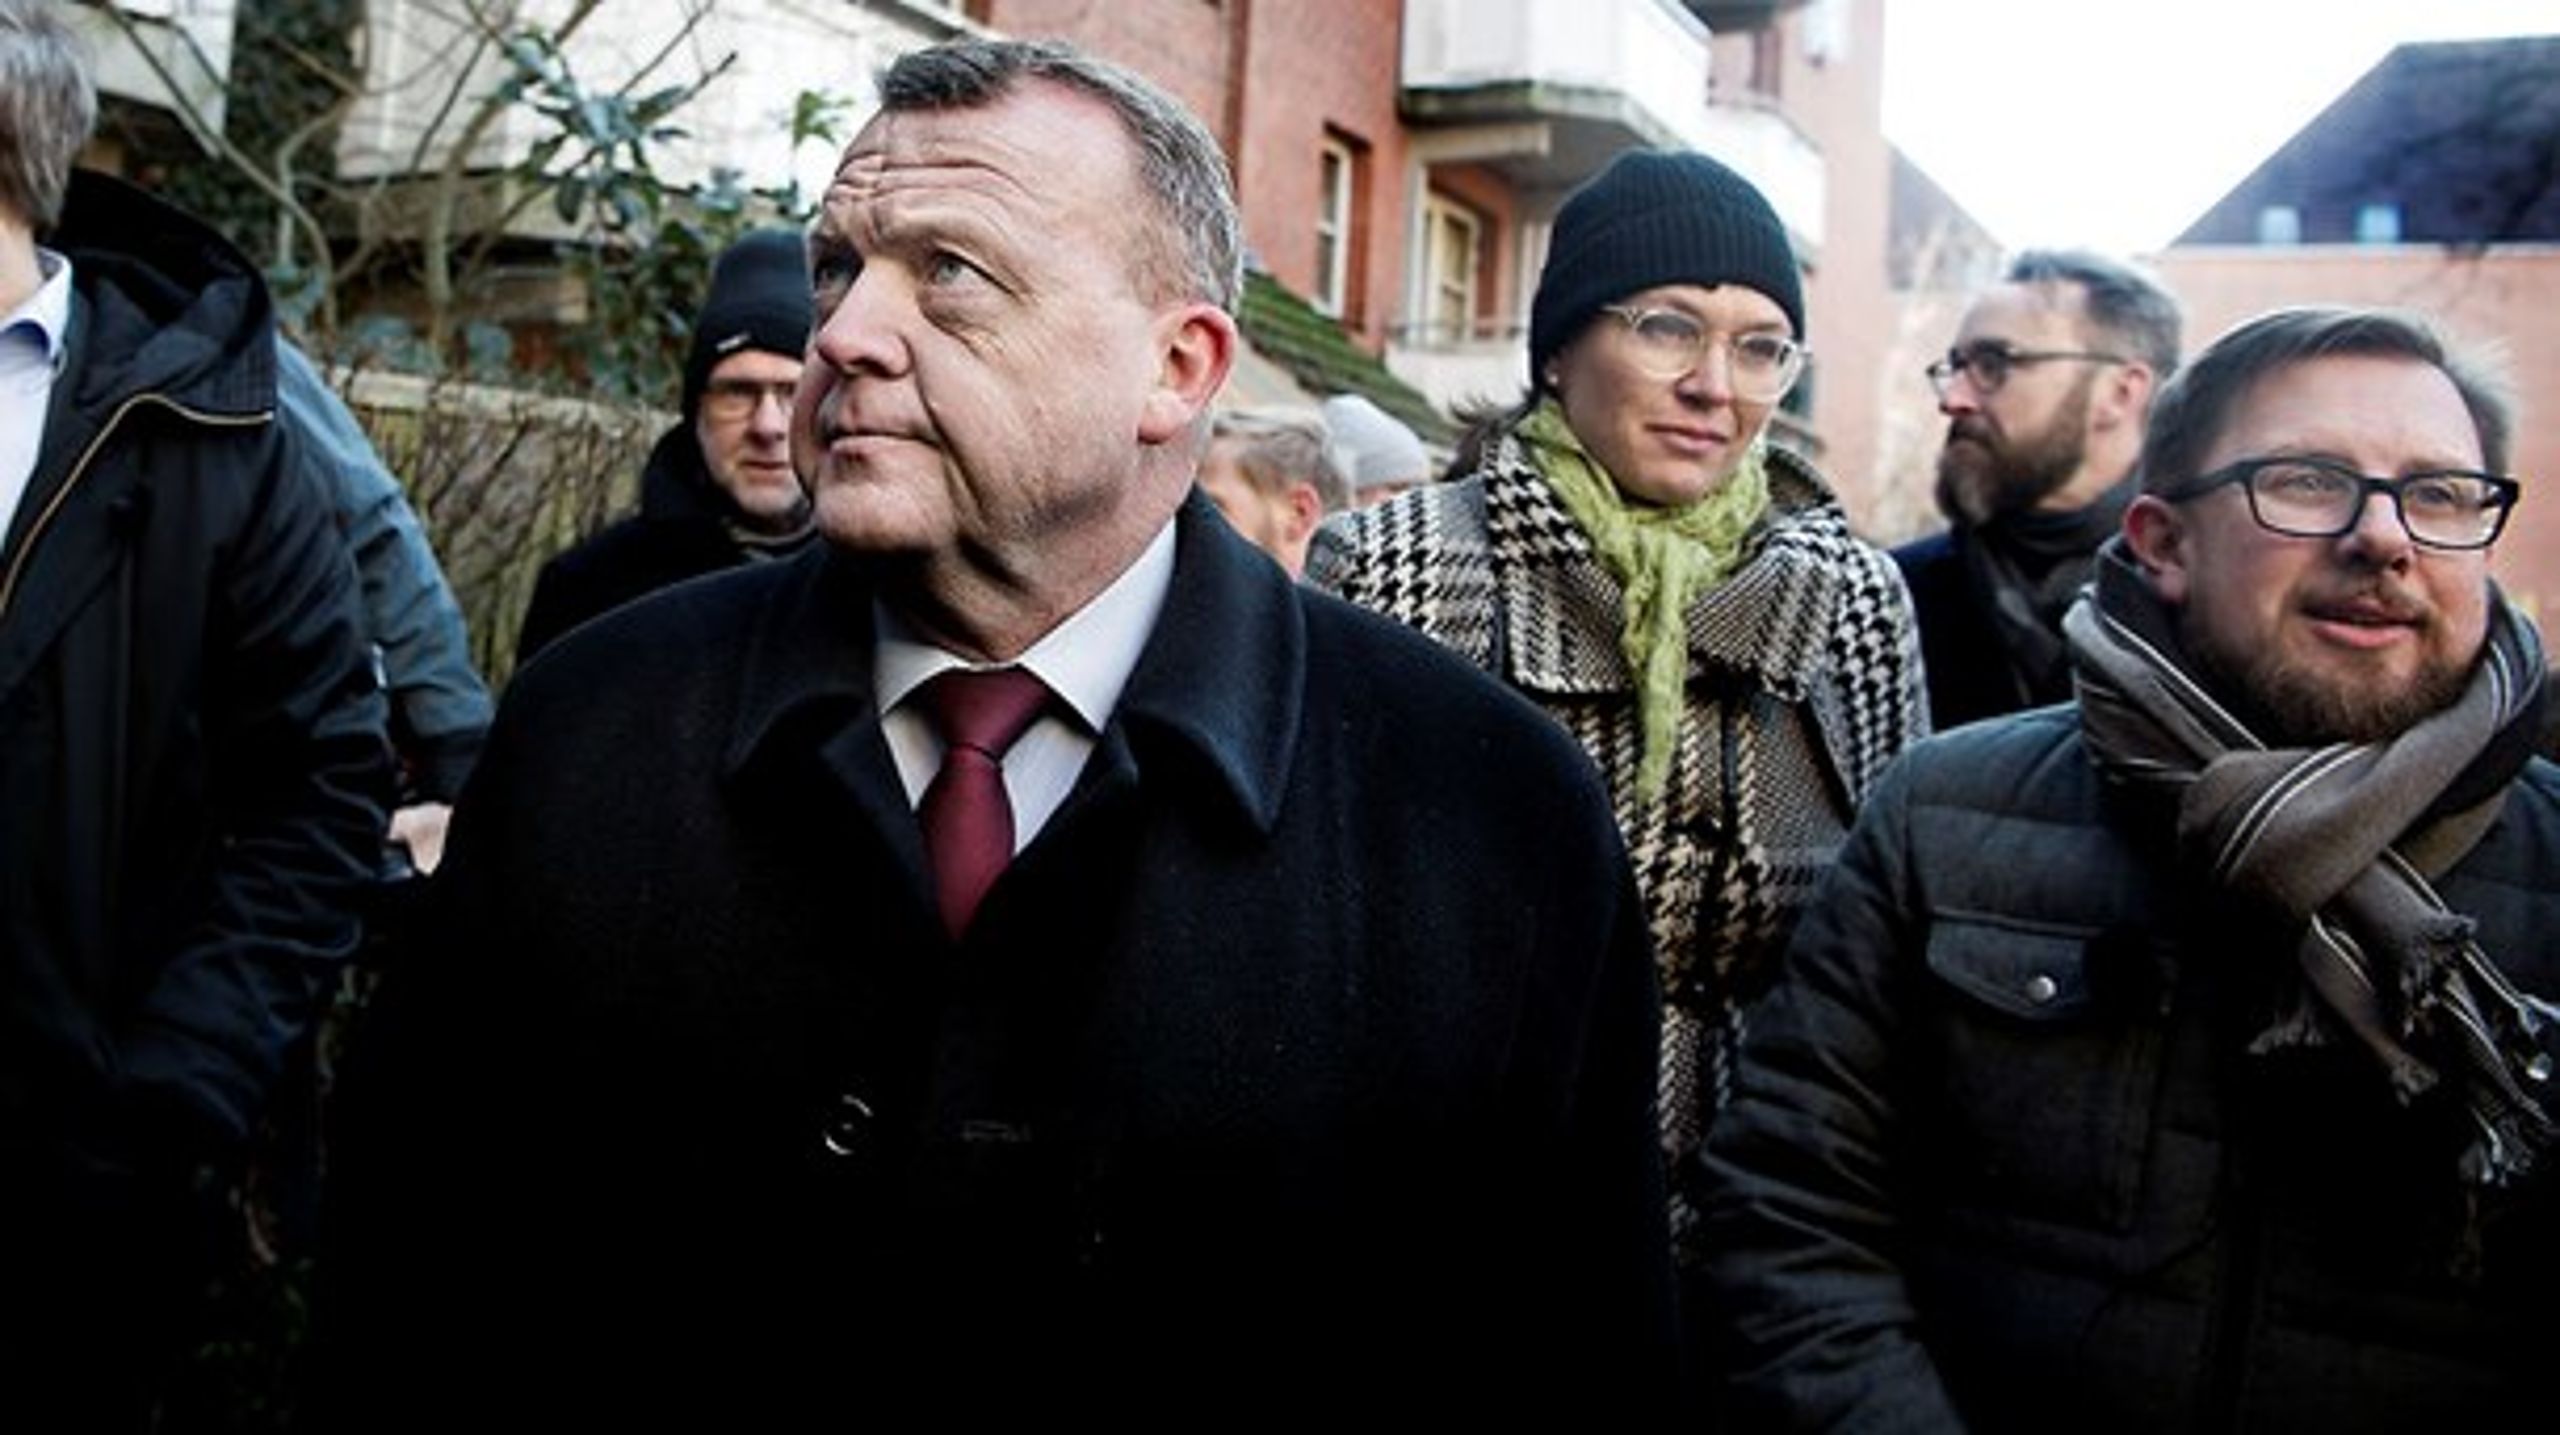 Statsminister Lars Løkke Rasmussen (V) og syv af hans ministerkollegaer var mødt op i Mjølnerparken, boligområdet i København, i forbindelse med præsentationen af regeringens udspil mod parallelsamfund.